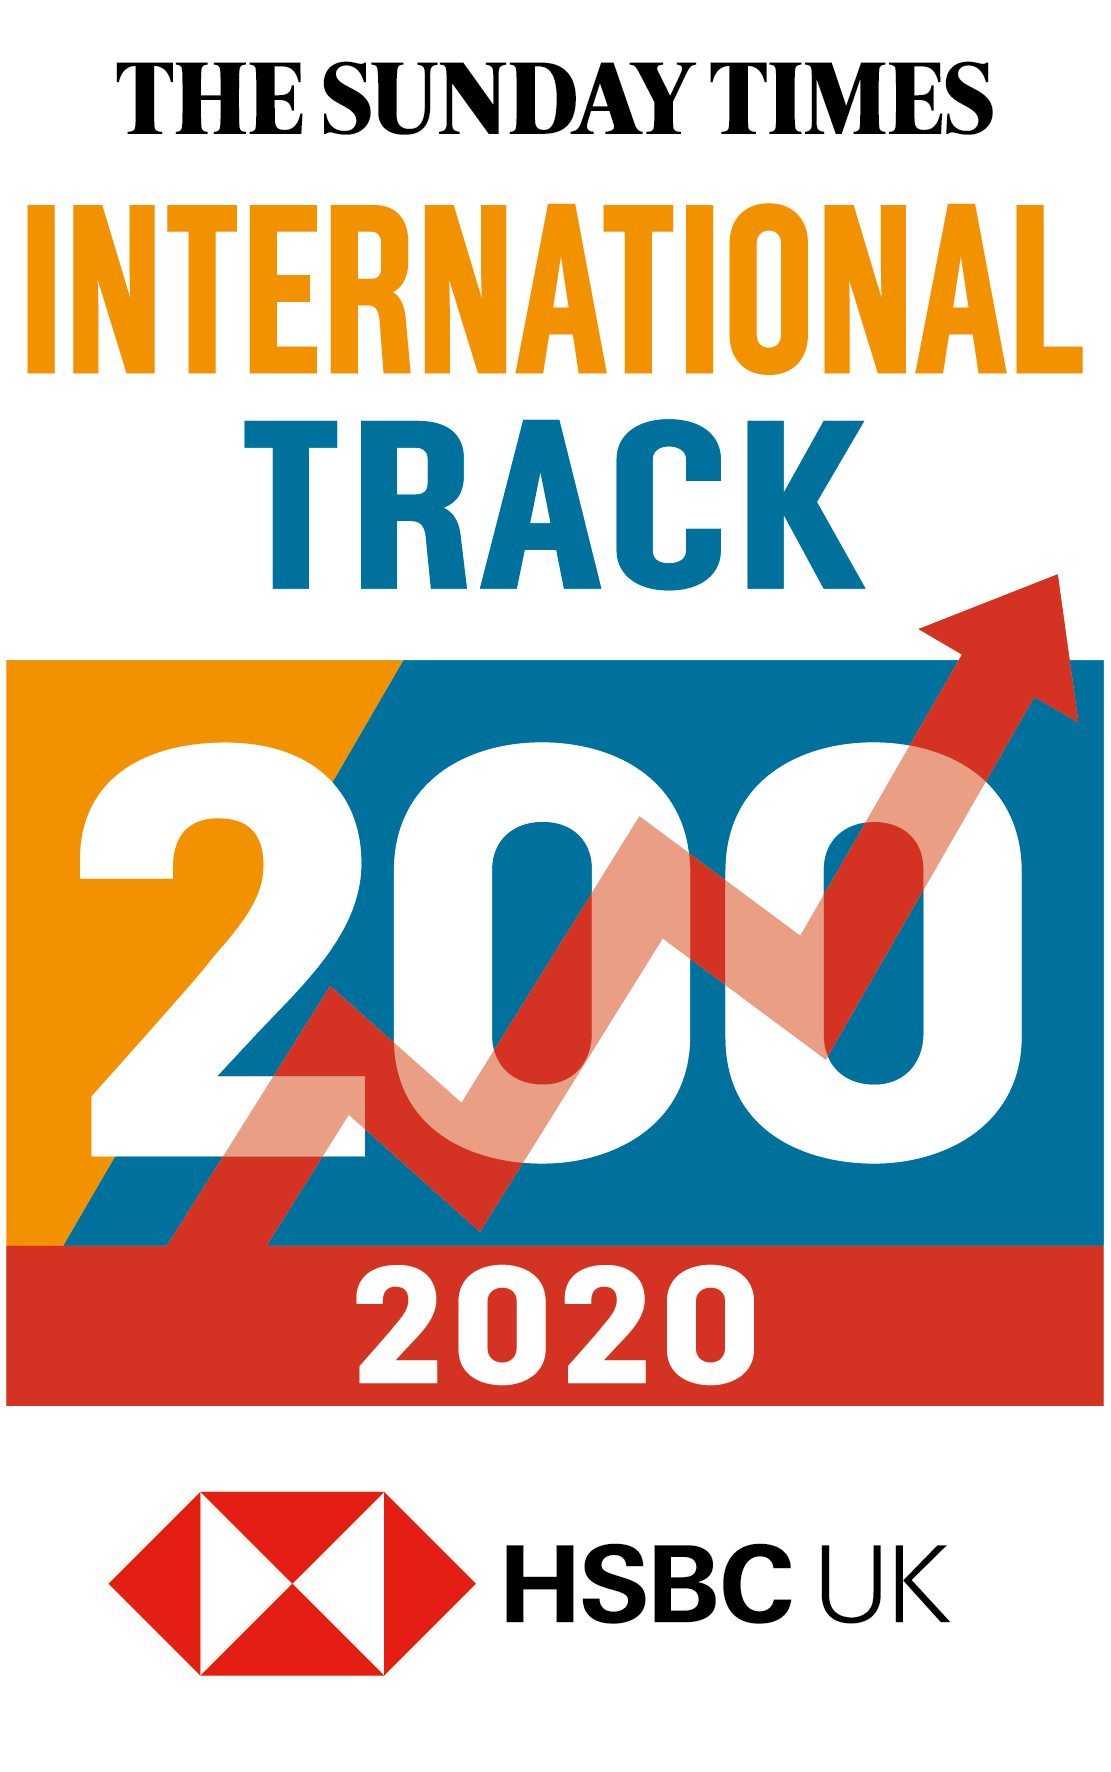 2020-International-Track-200-logo-kl.png